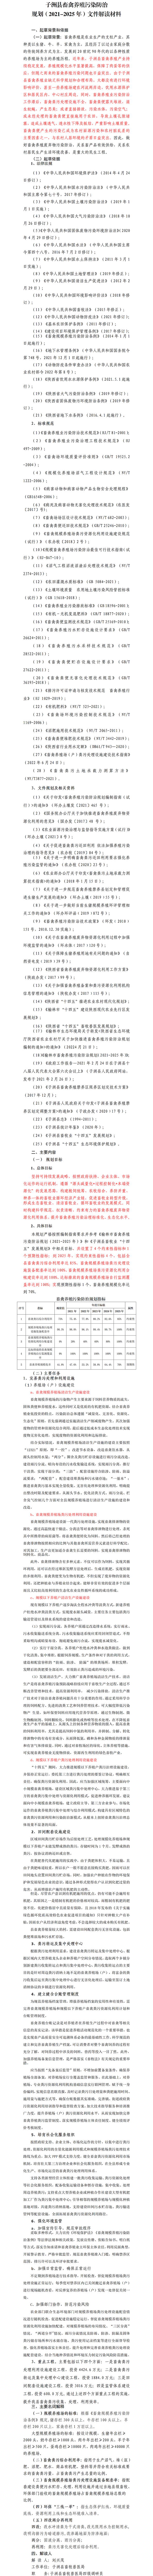 〔文字解读〕子洲县畜禽养殖污染防治规划（2021-2025年）